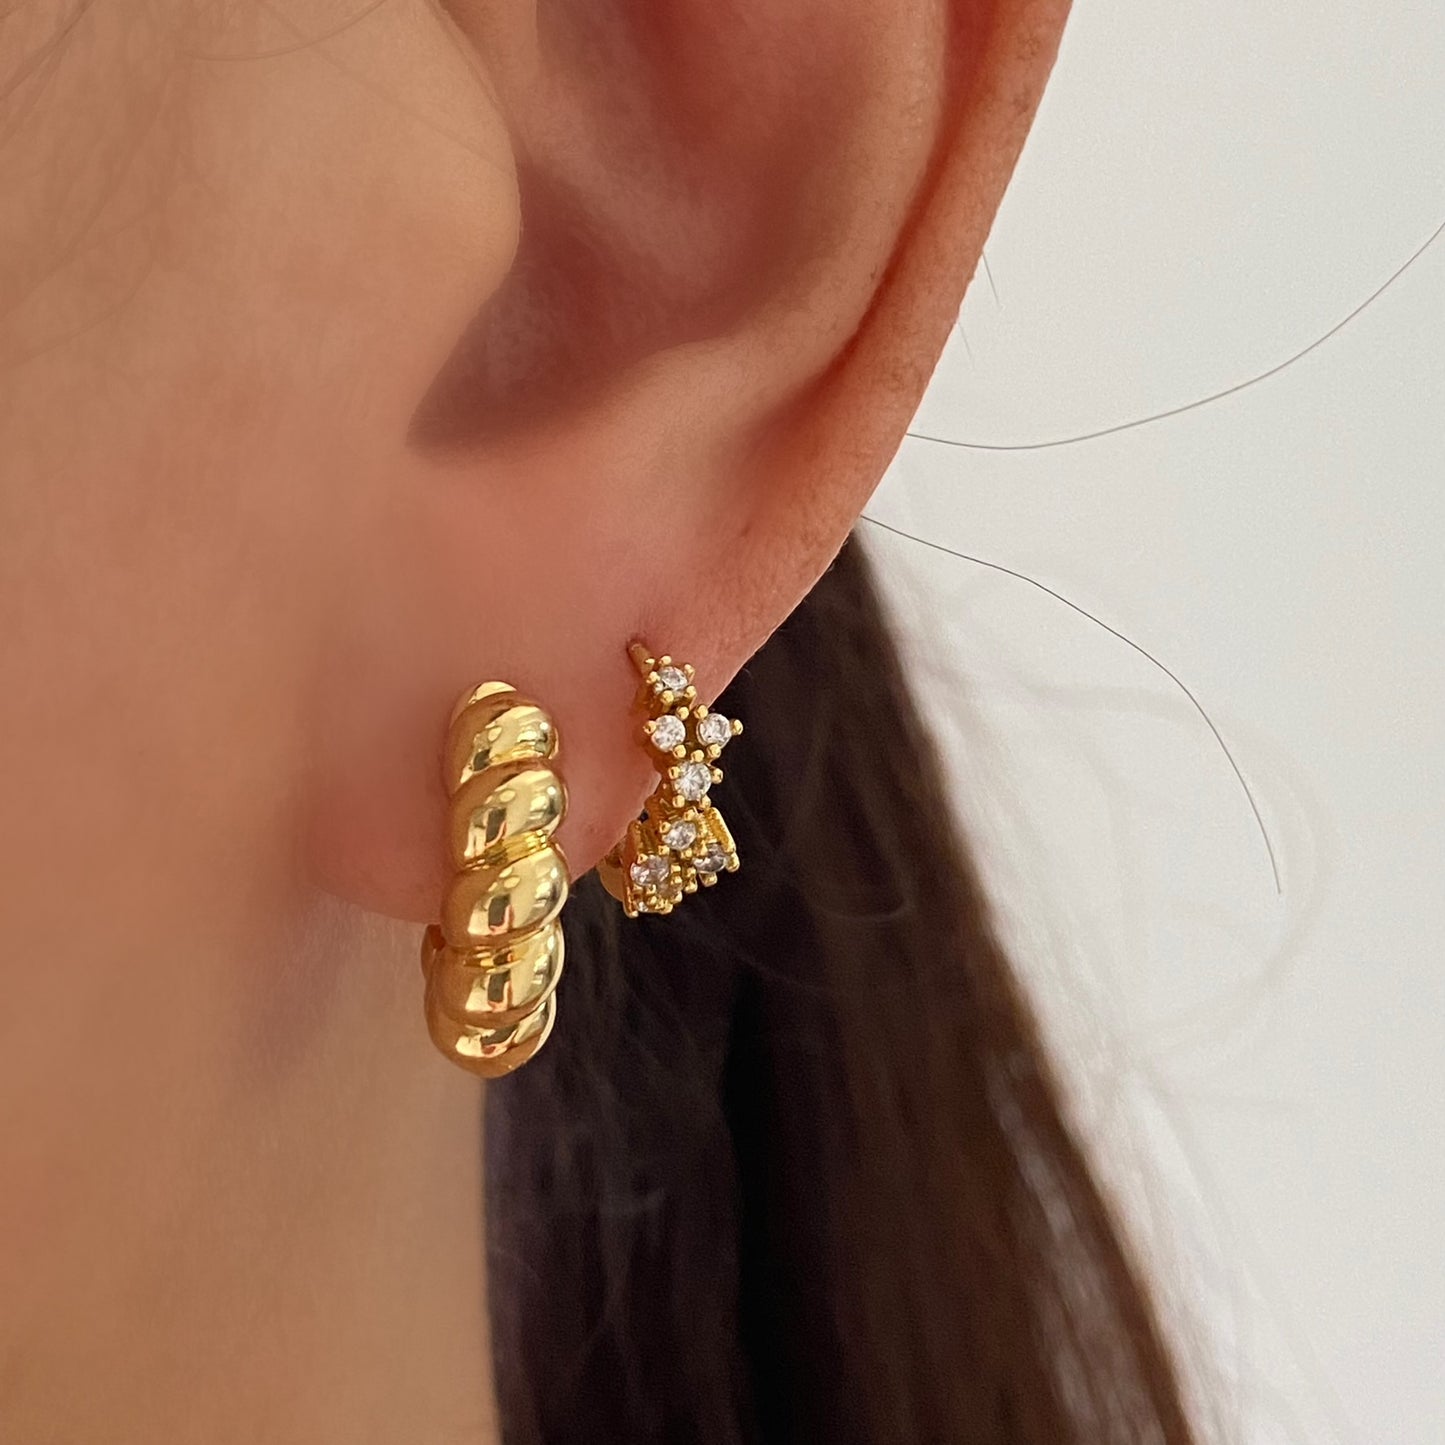 Croissant Gold Hoop Earrings, Twist Hoop 5mm thick, Gold Dome Hoop